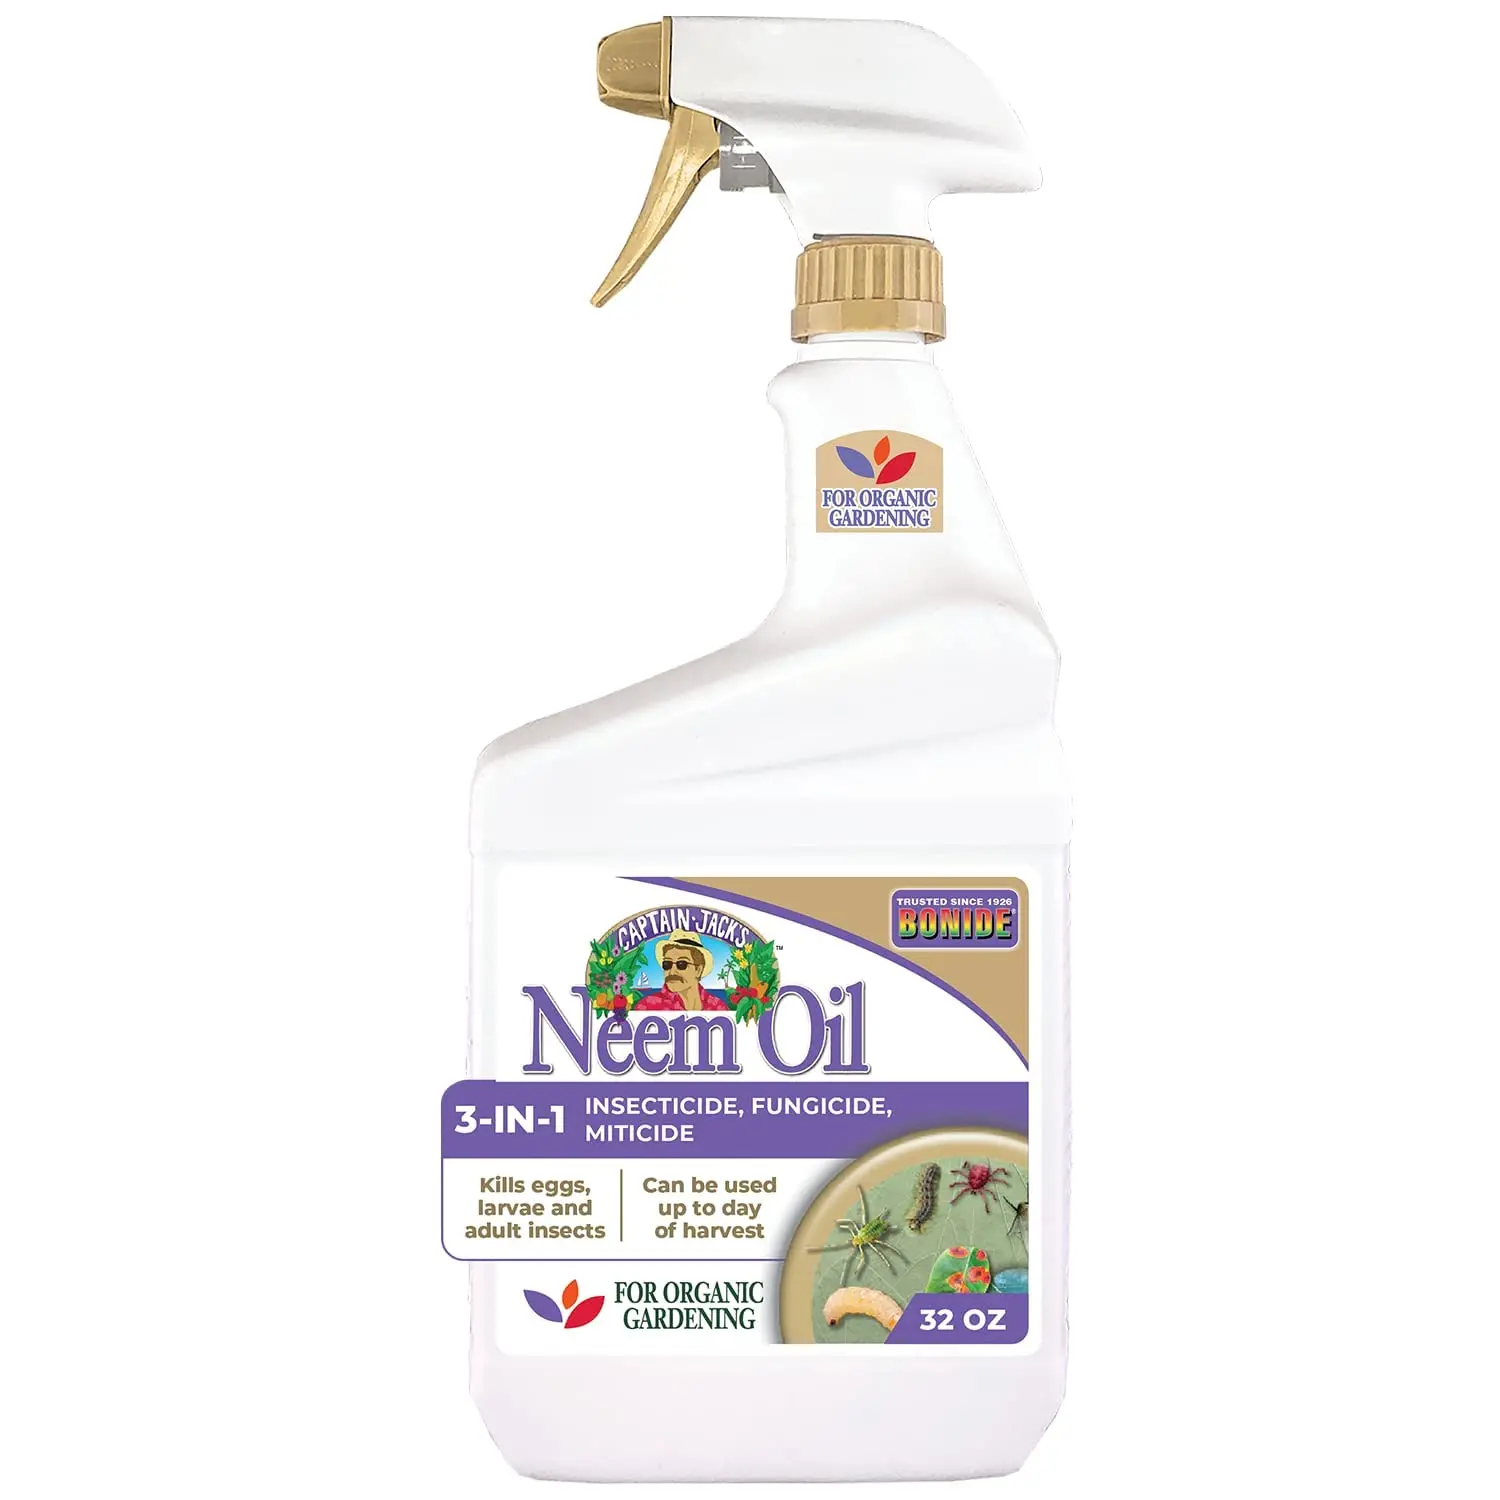 Bonide's neem oil